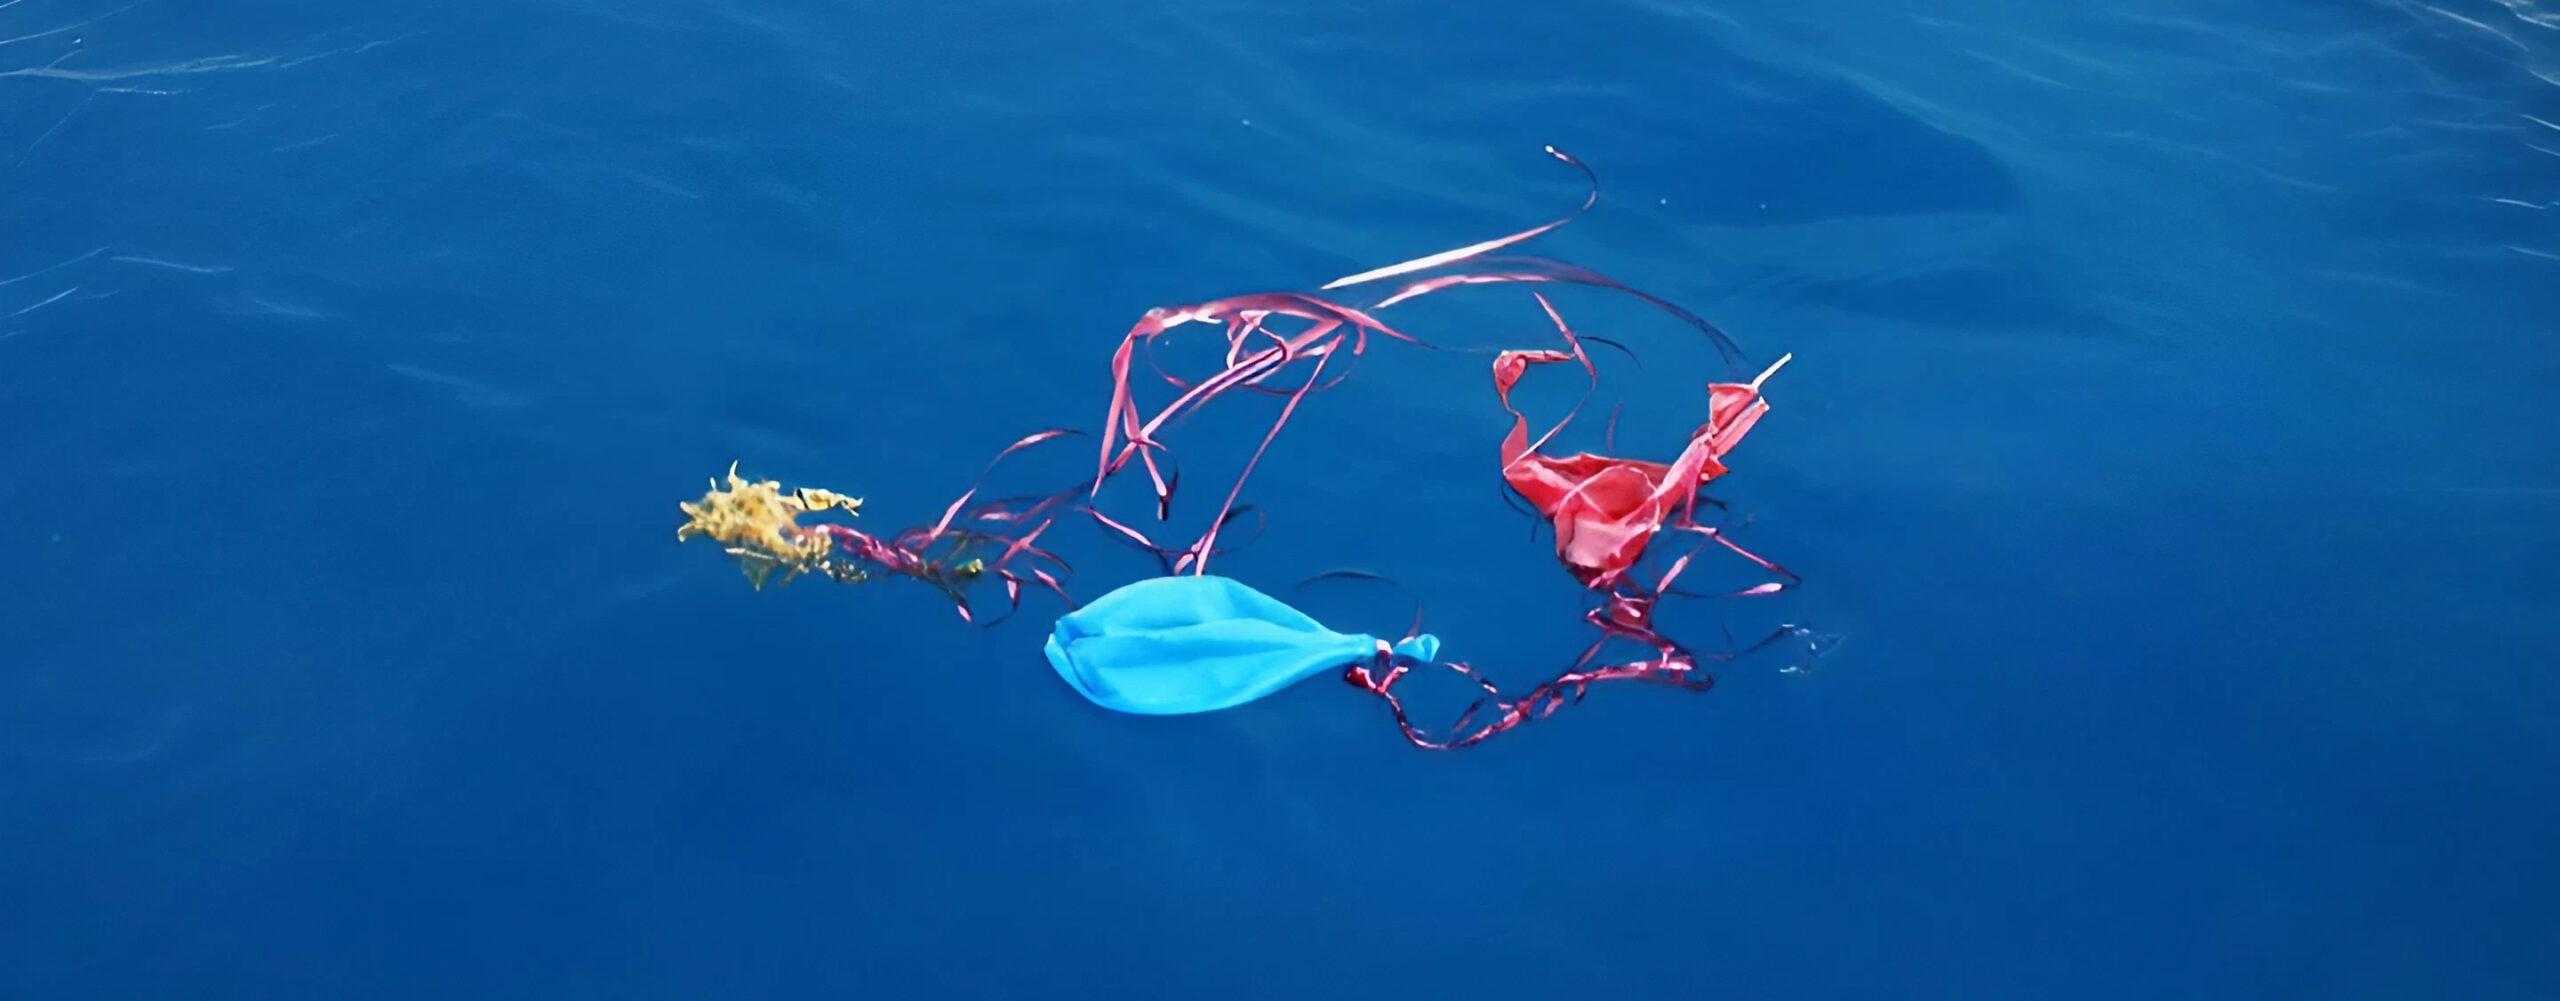 Umweltverschmutzung durch Luftballons, Ballons im Wasser, Alternative zu Luftballons